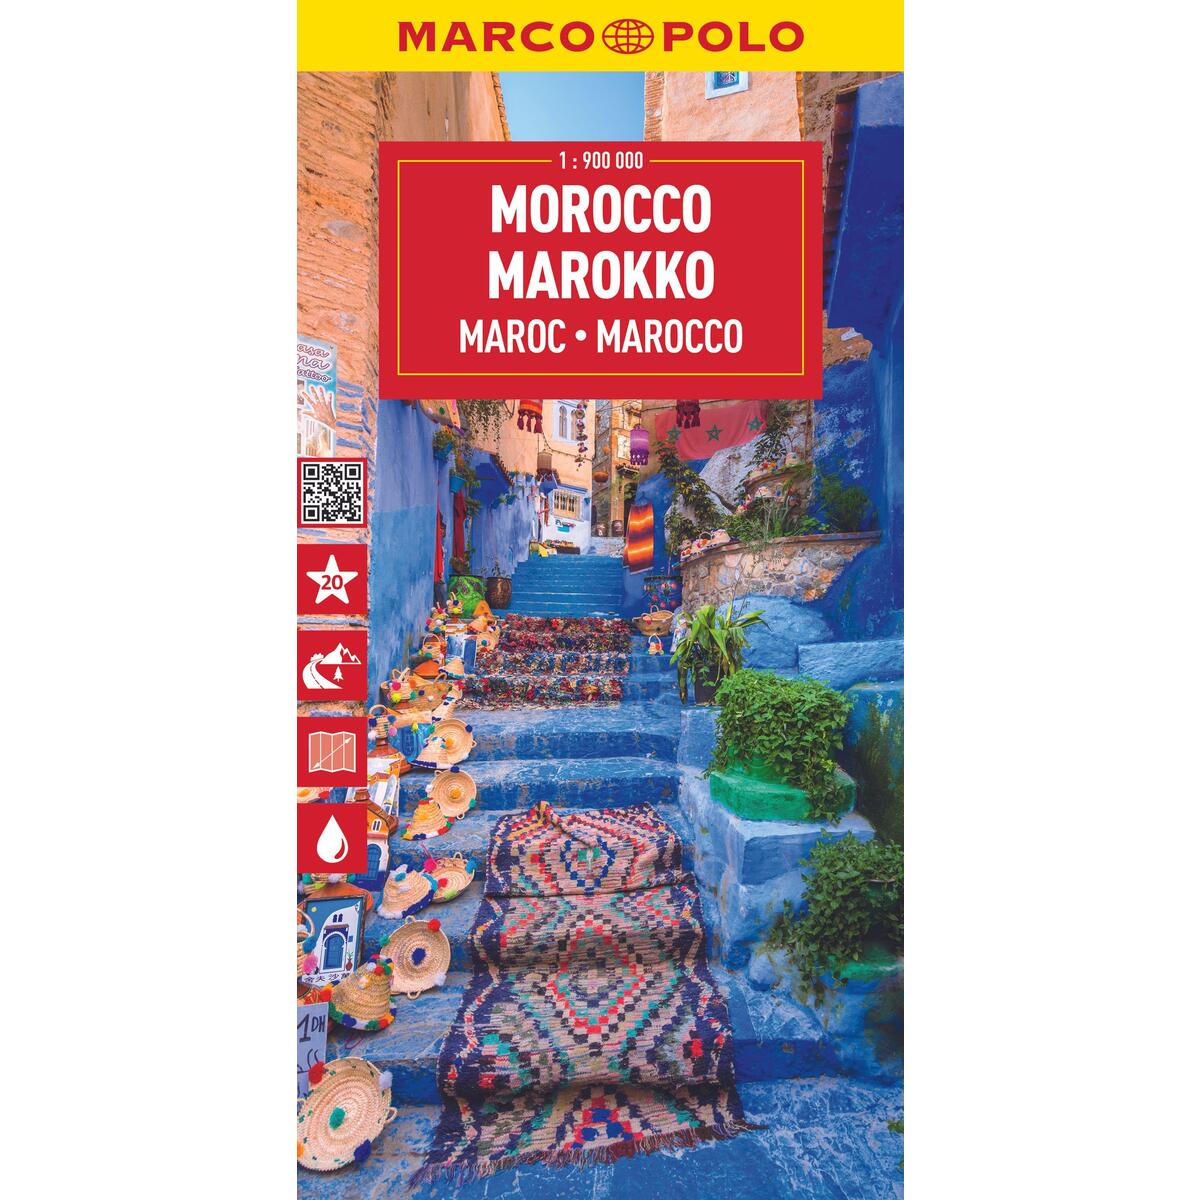 MARCO POLO Reisekarte Marokko 1:900.000 von Mairdumont